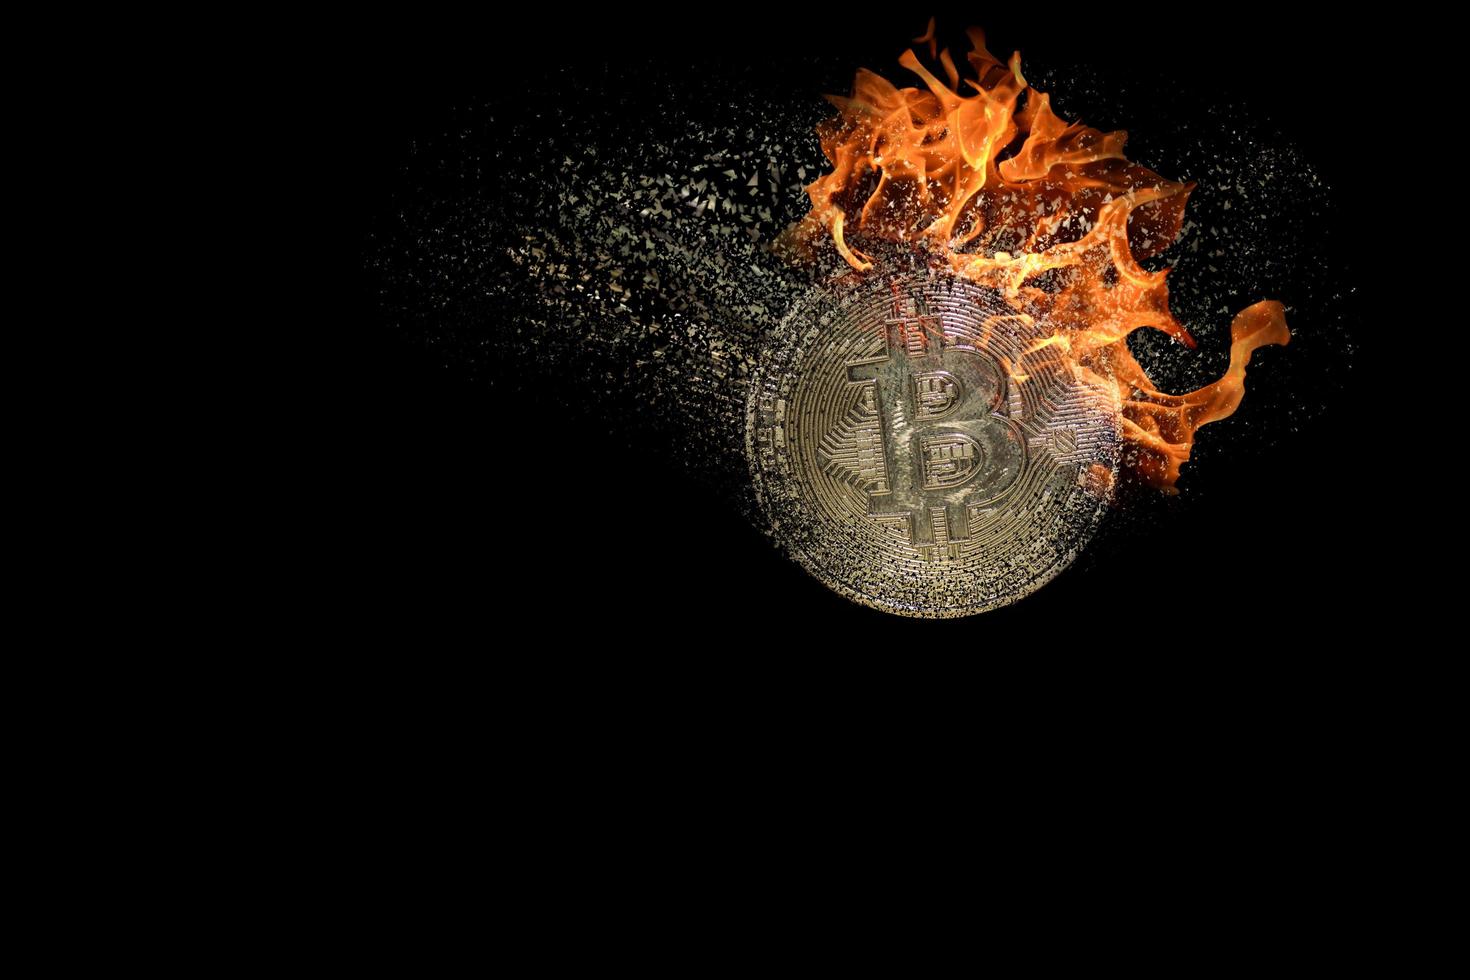 la quema de valor único se descompone y disuelve bitcoin de la moneda criptográfica con negro foto